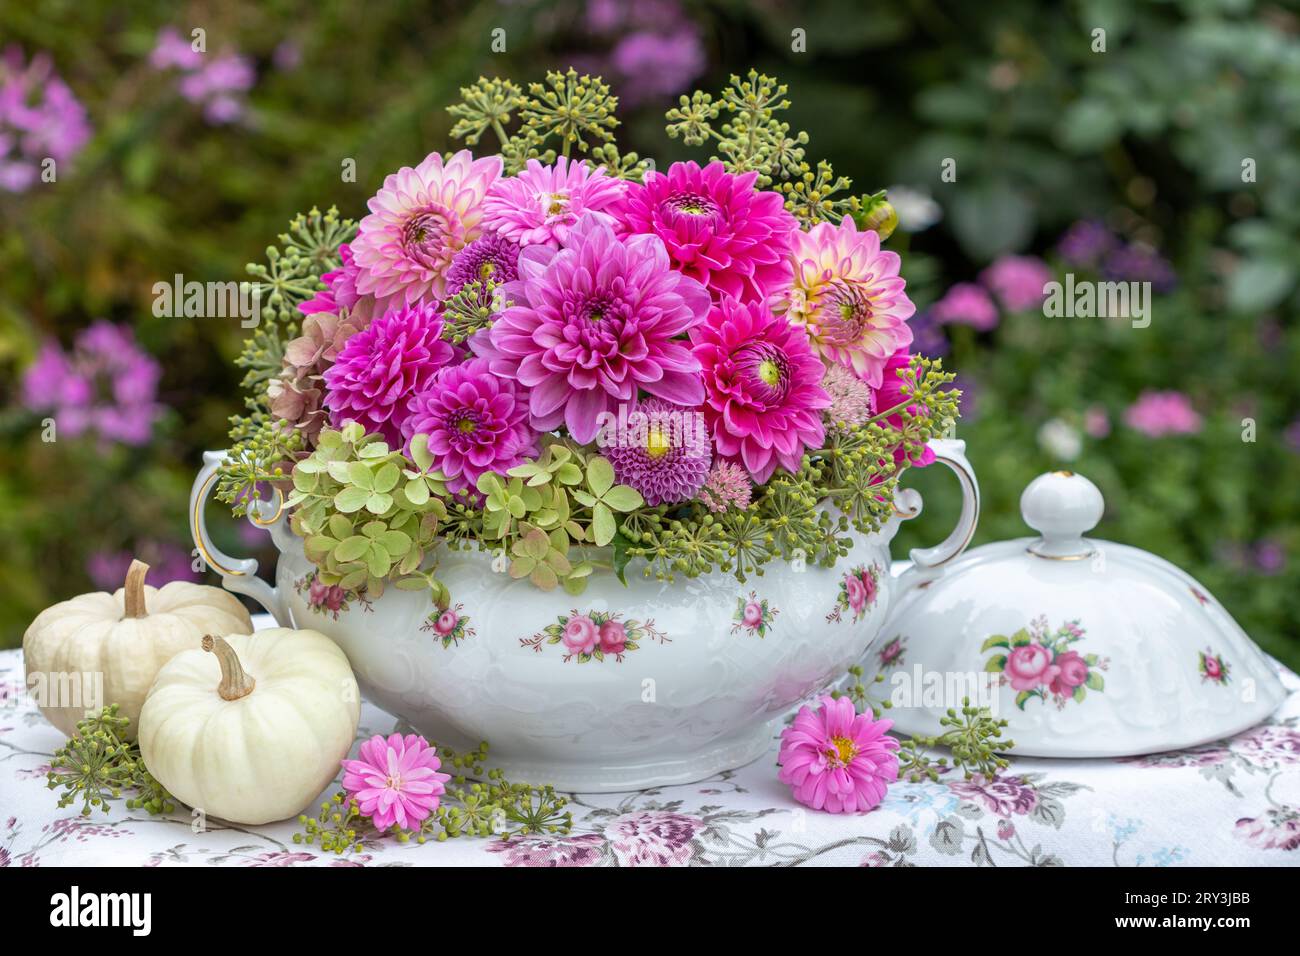 arrangement floral romantique de dahlias roses dans une soupe vintage et des citrouilles blanches Banque D'Images